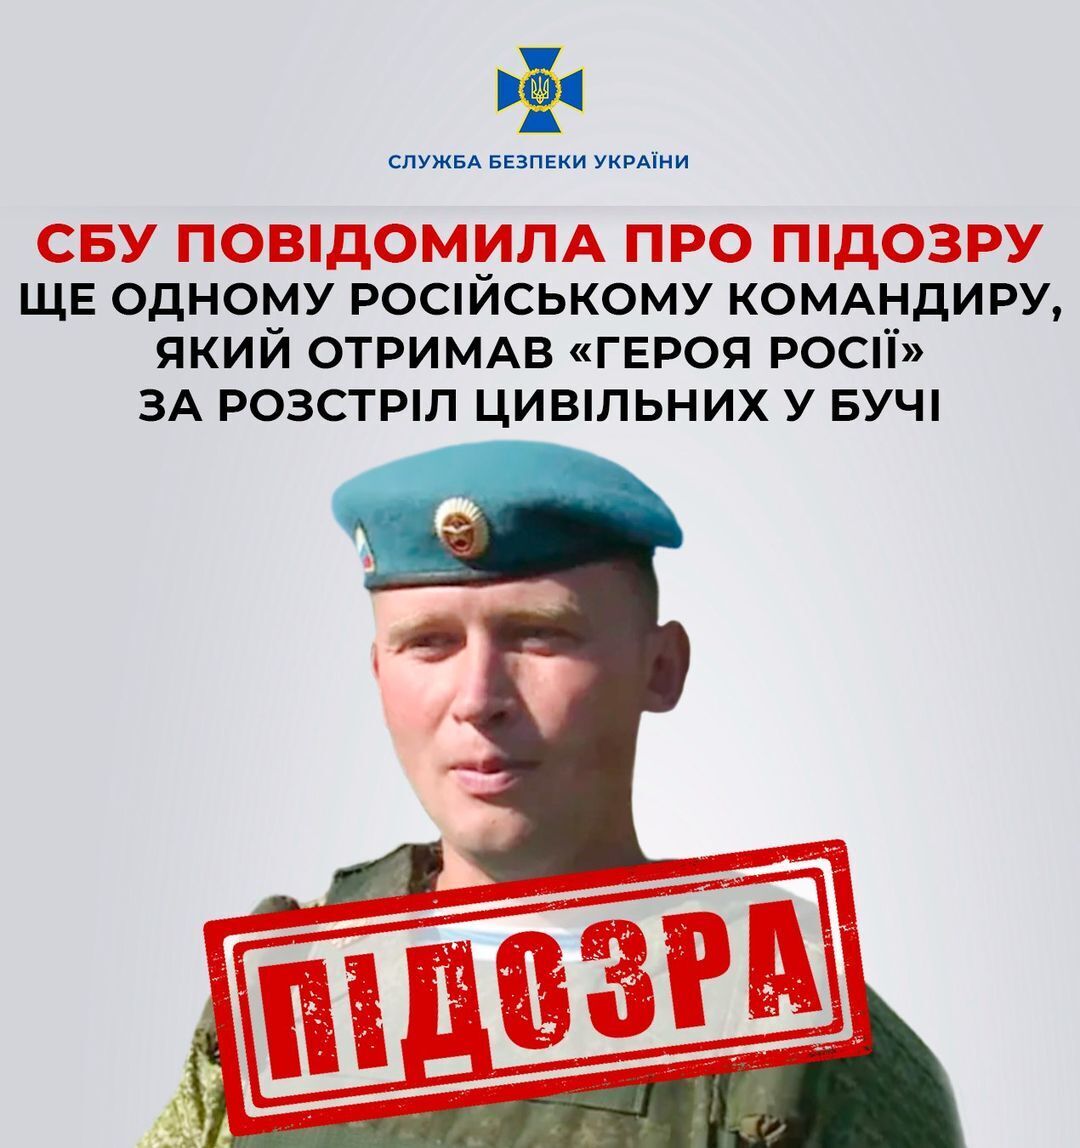 СБУ повідомила про підозру окупанту, який отримав "героя Росії" за розстріл цивільних у Бучі. Фото